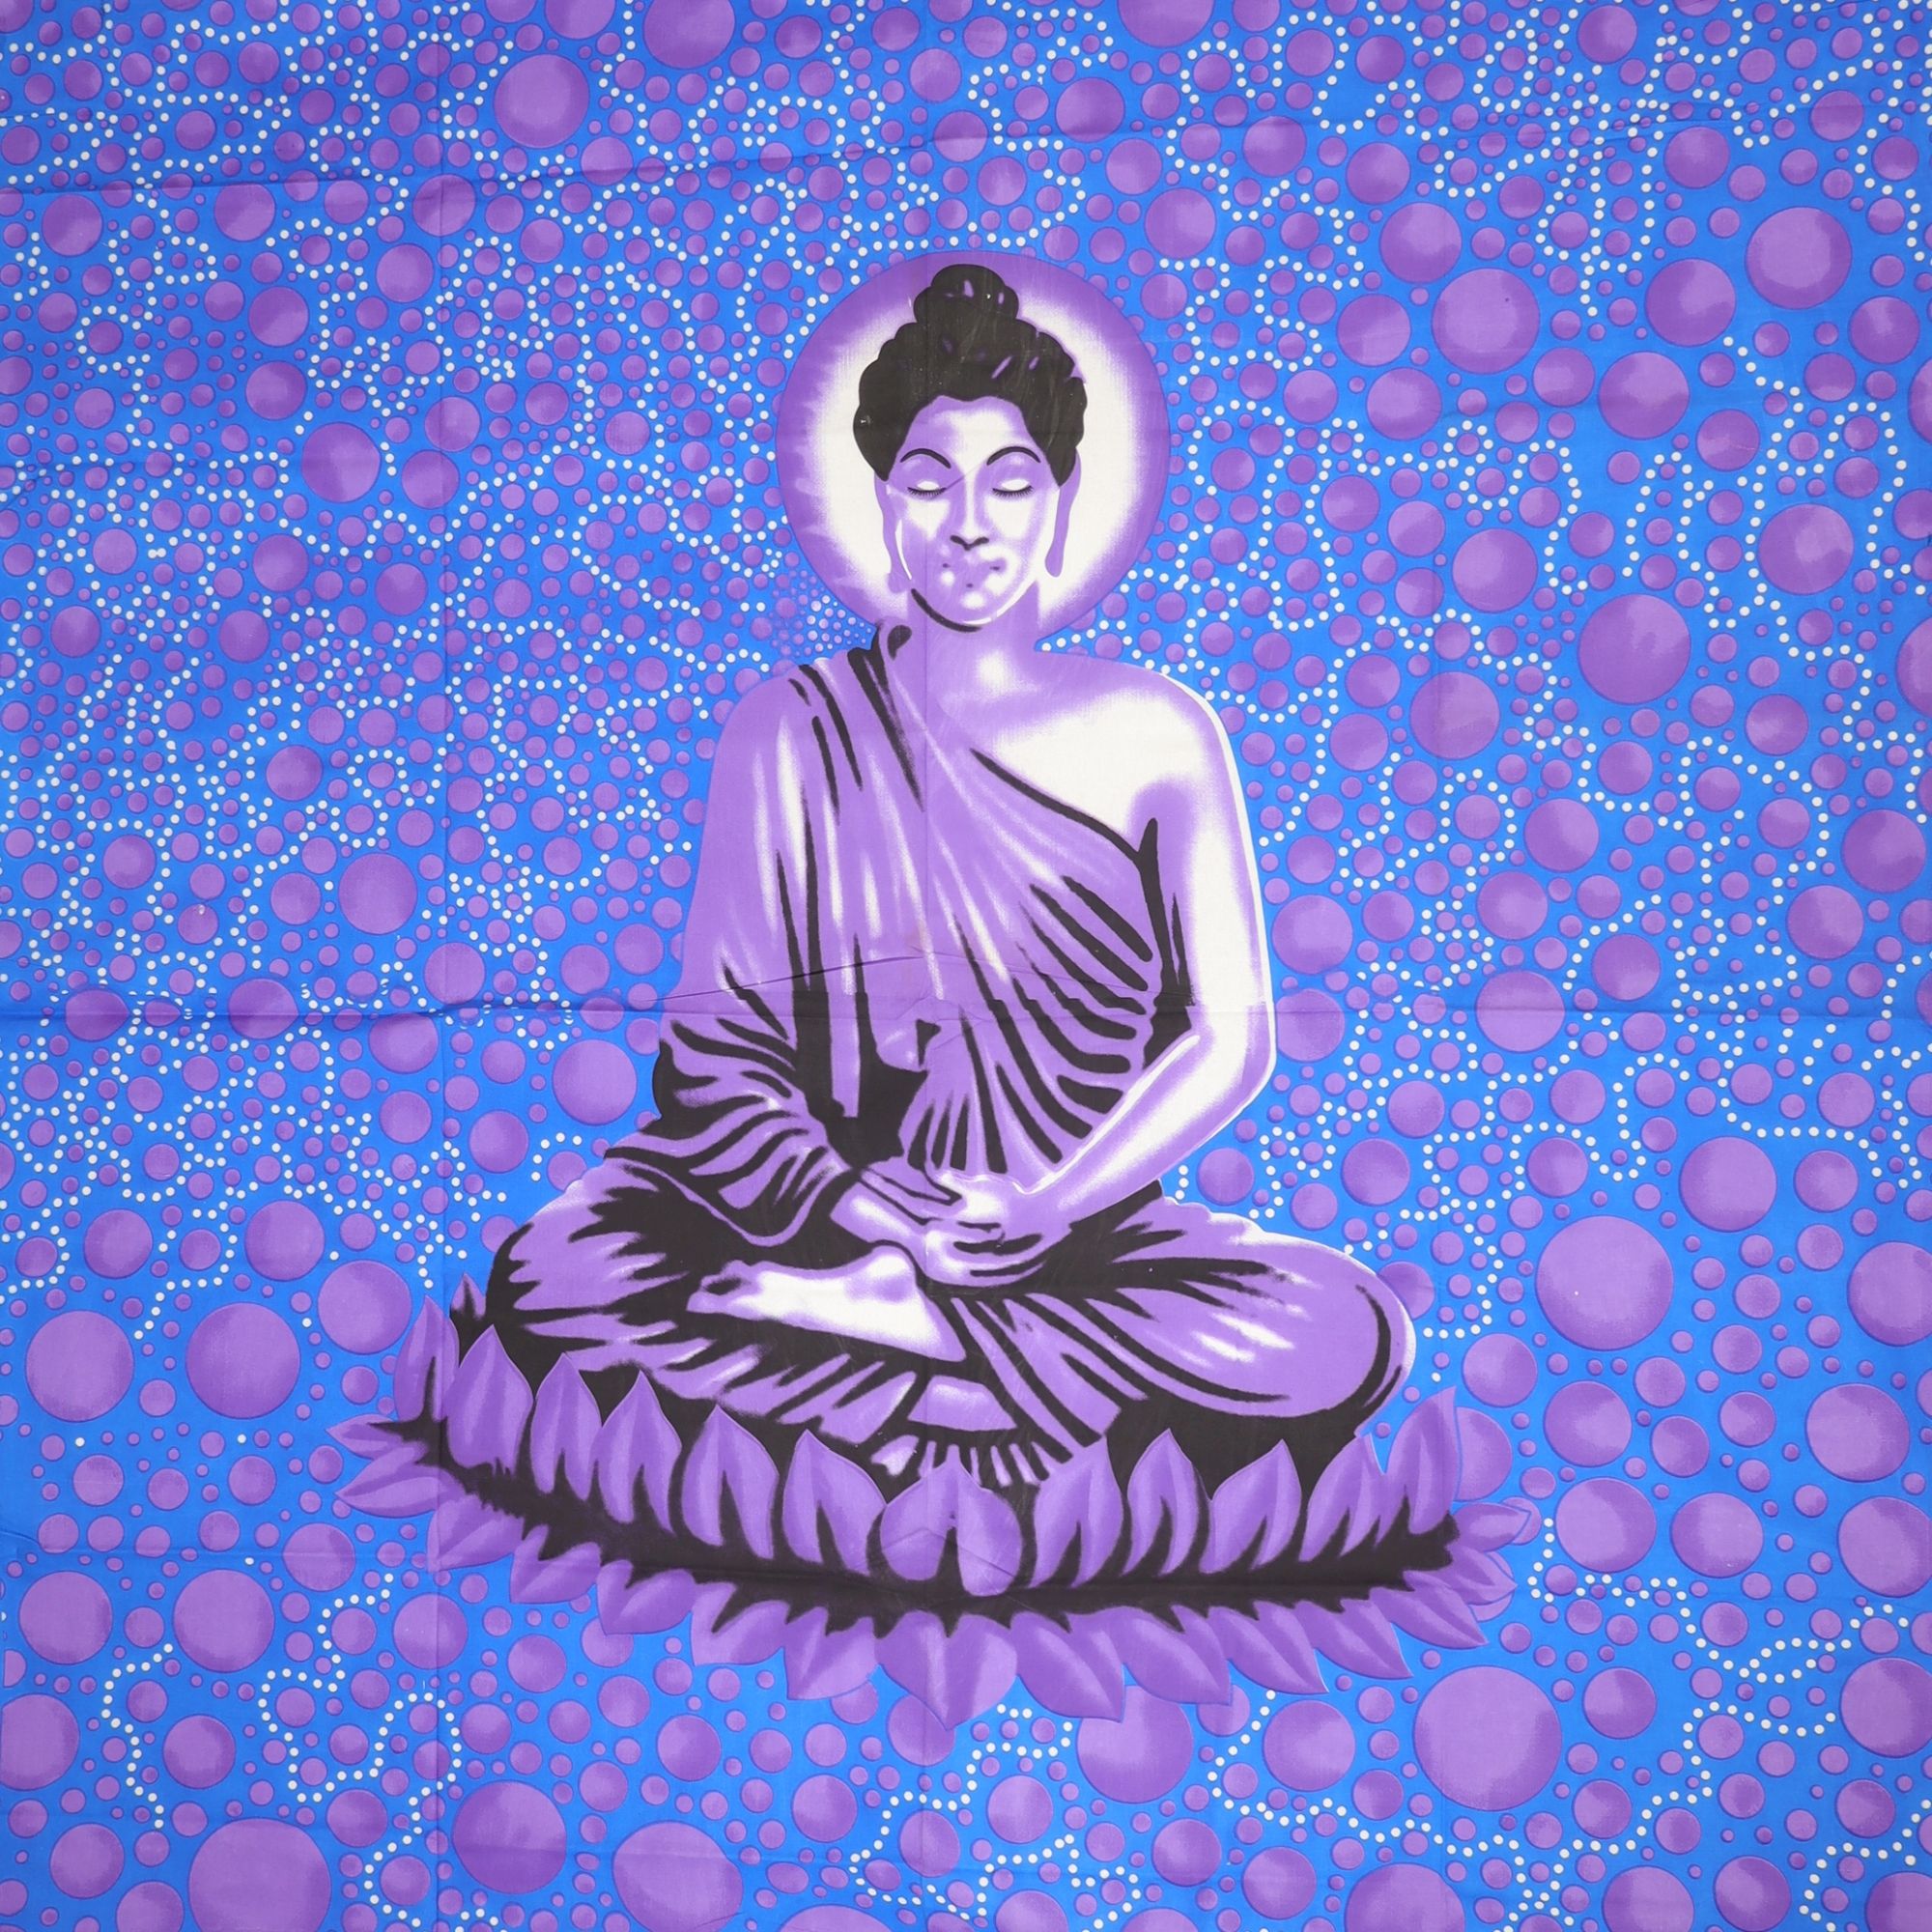 Wandtuch XXL 210x230 - Buddha - 100% Baumwolle - detailreicher indischer Druck - mehrfarbig - dekoratives Tuch, Wandbild, Tagesdecke, Bedcover, Vorhang, Picknick-Decke, Strandtuch